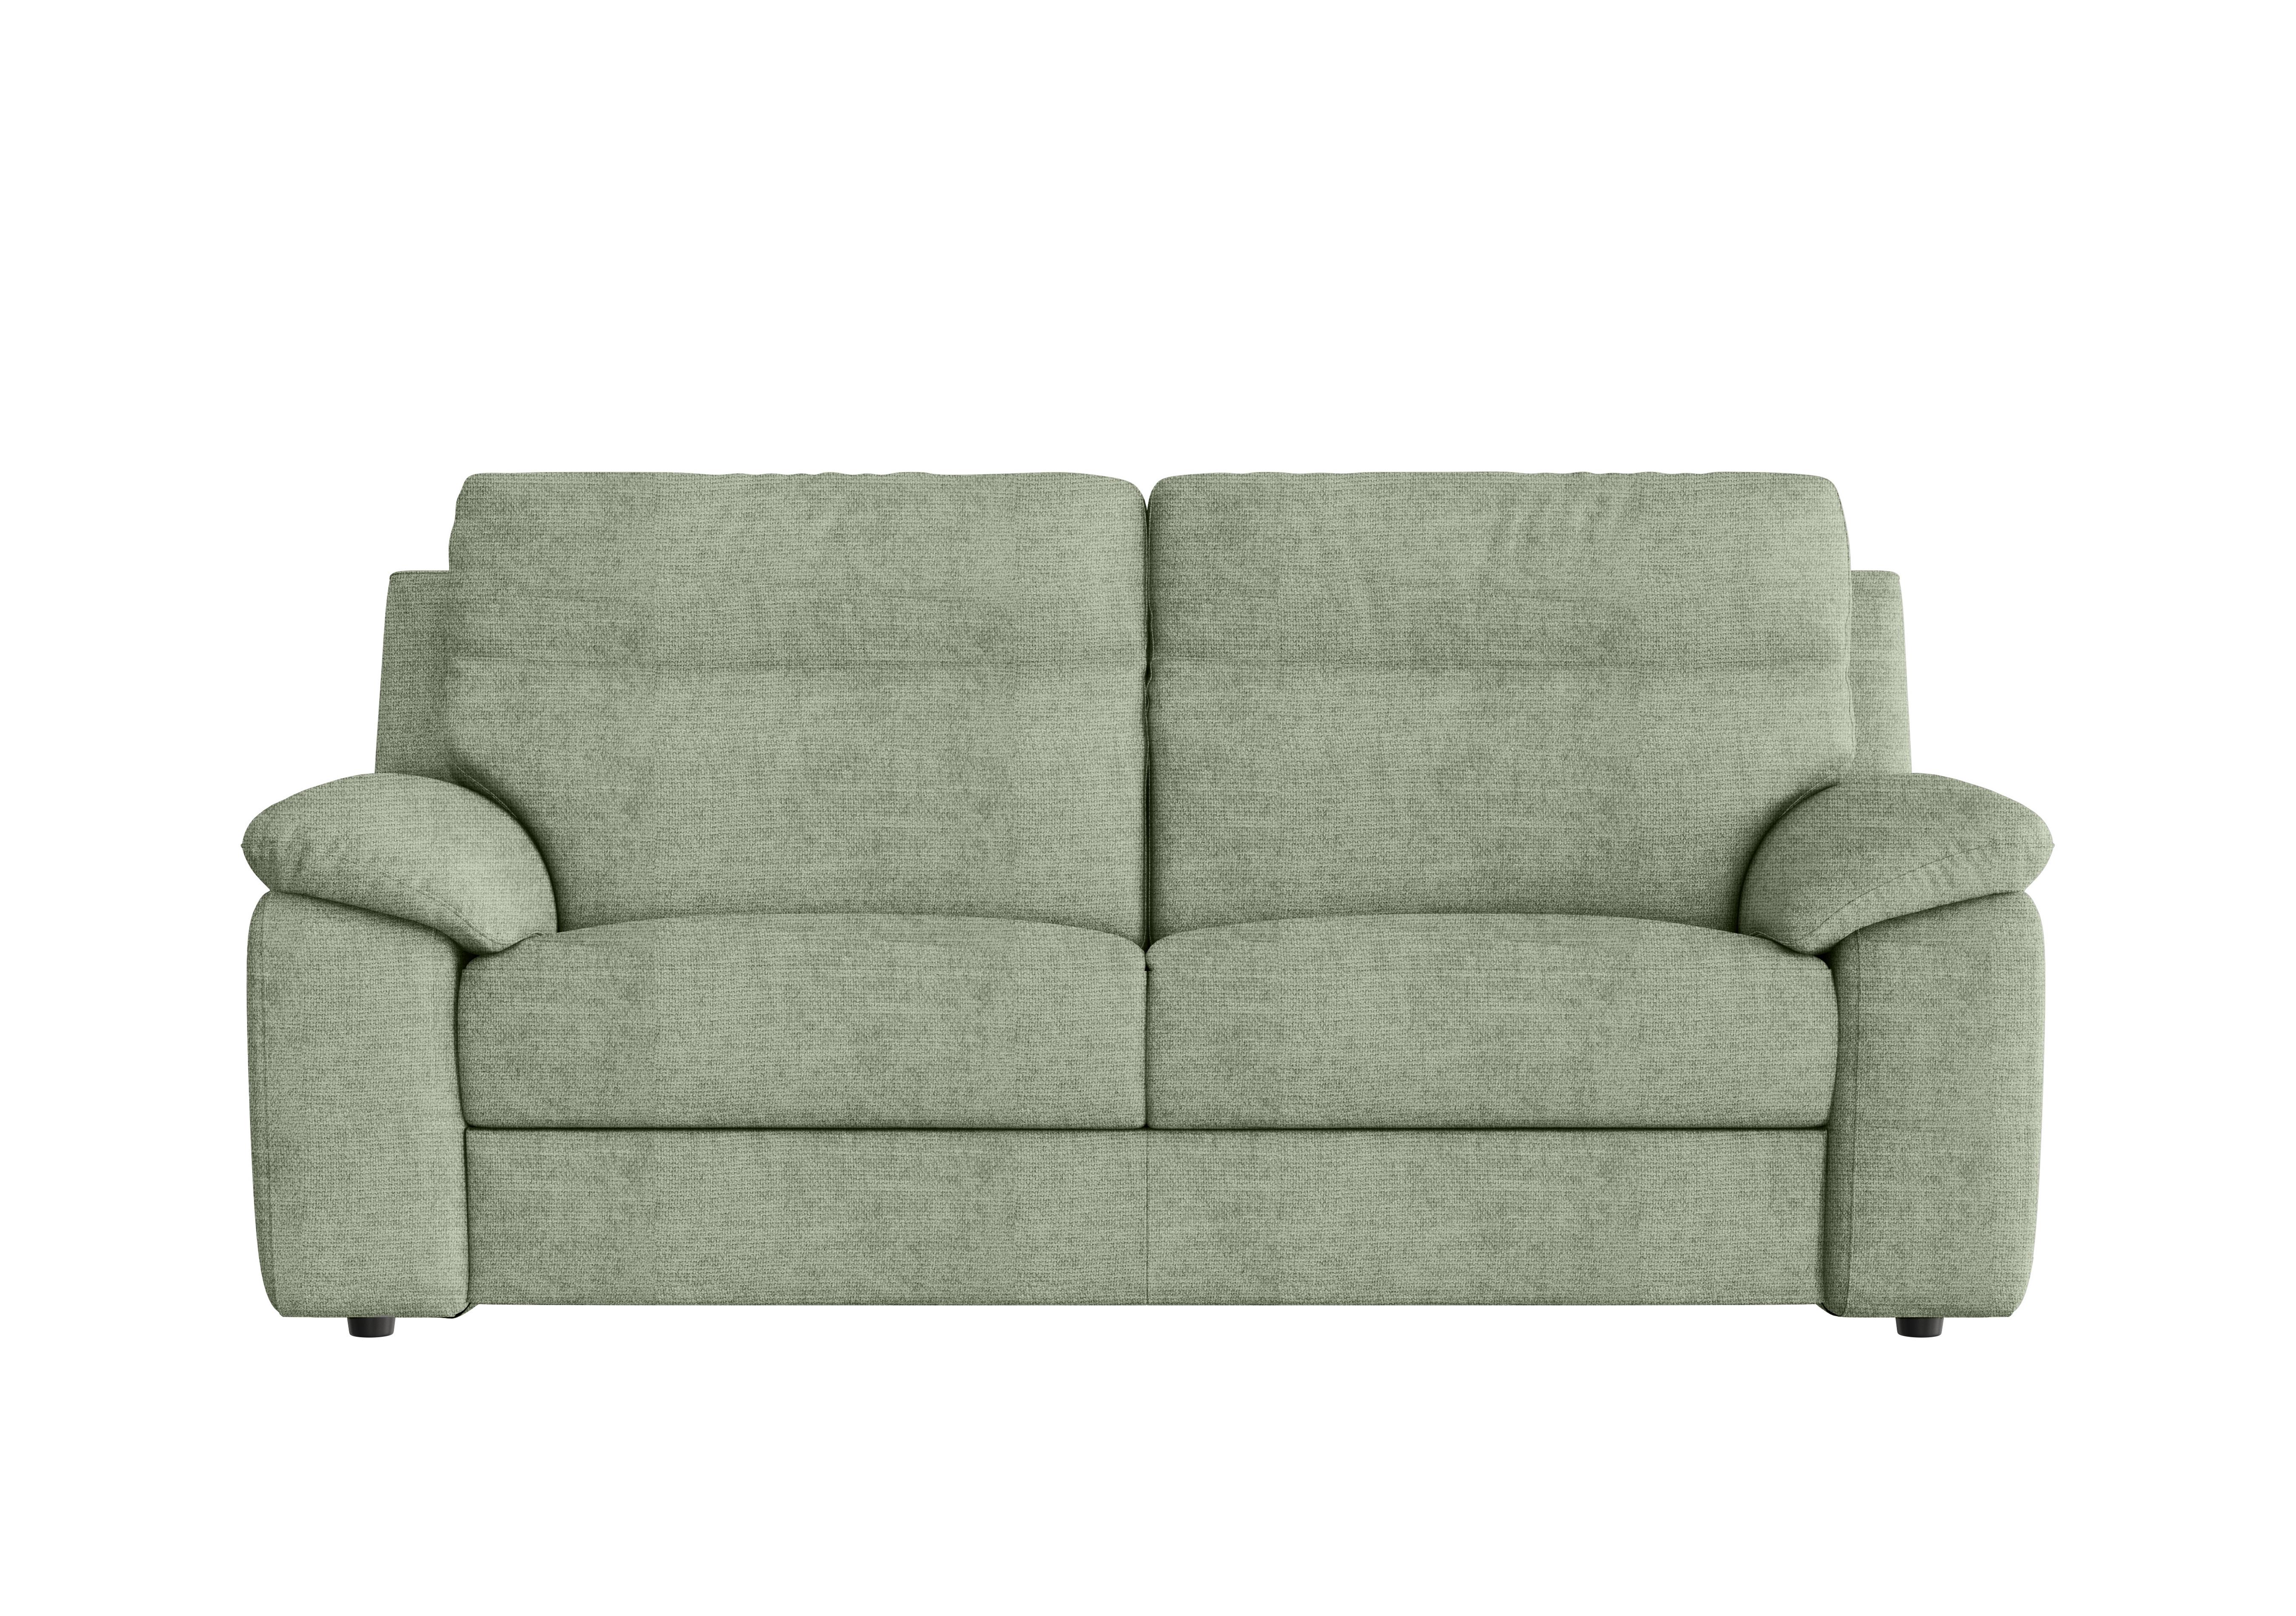 Pepino 3 Seater Fabric Sofa in Baobab Muschio 538 on Furniture Village